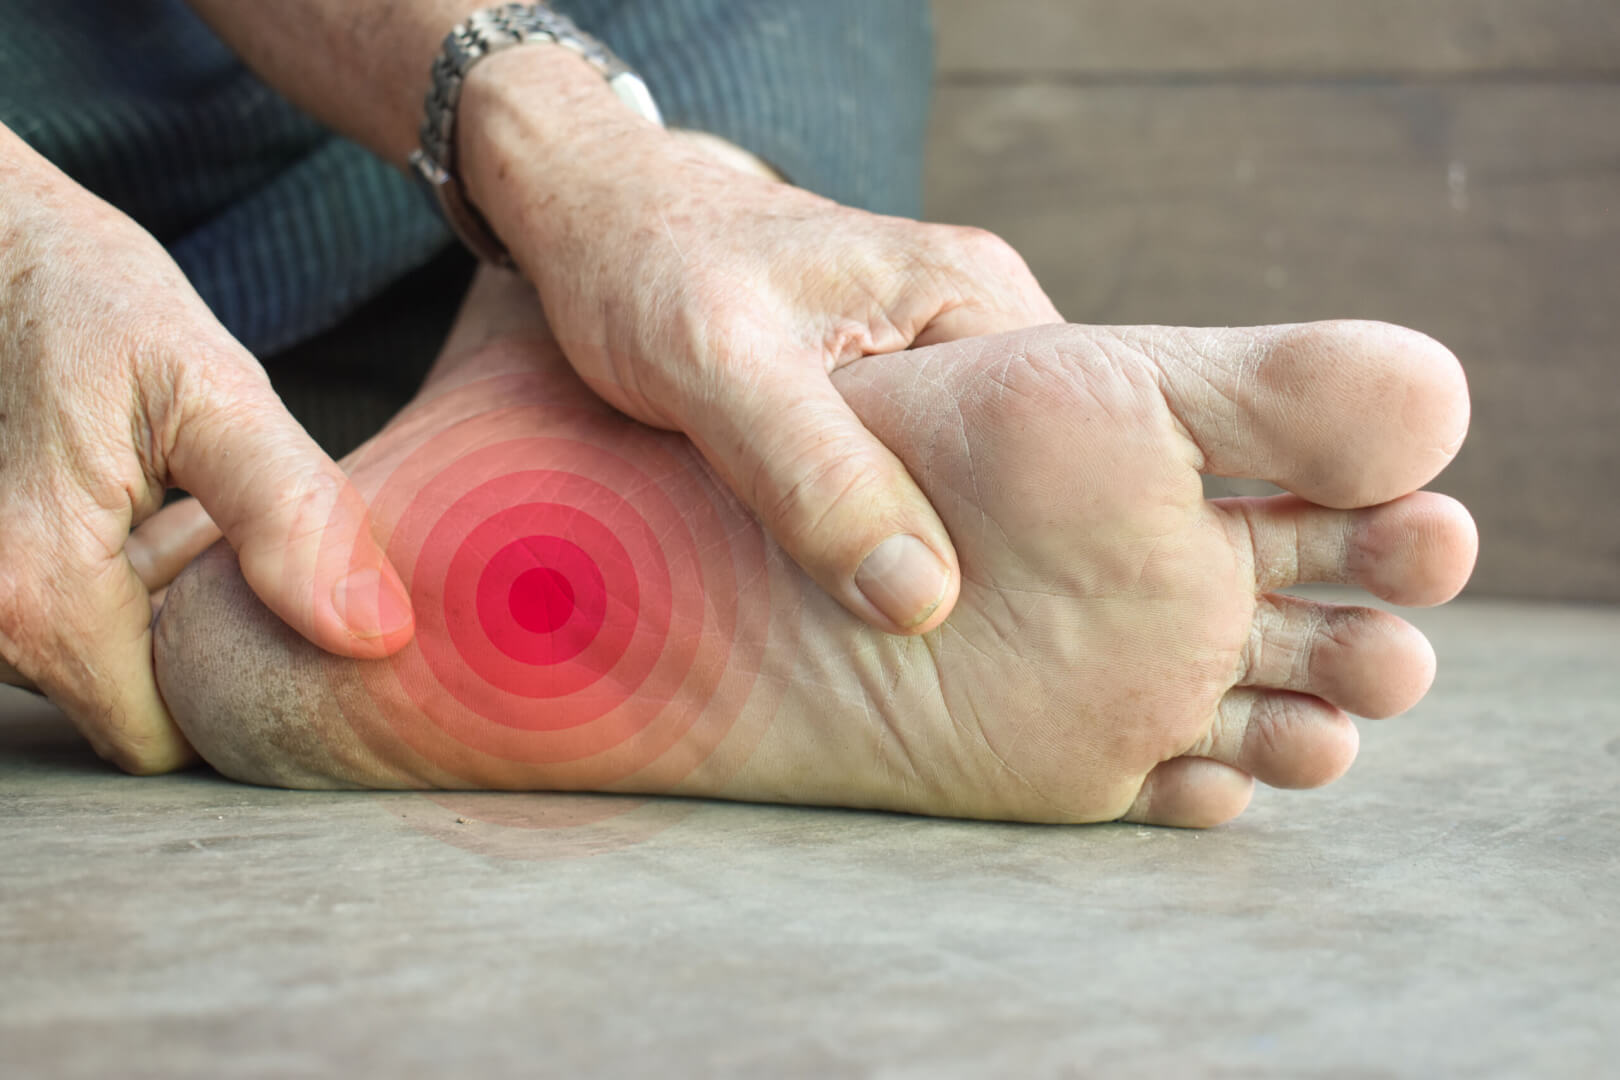 Una persona mayor se masajea el pie izquierdo al notar un hormigueo o adormecimiento por parestesia.